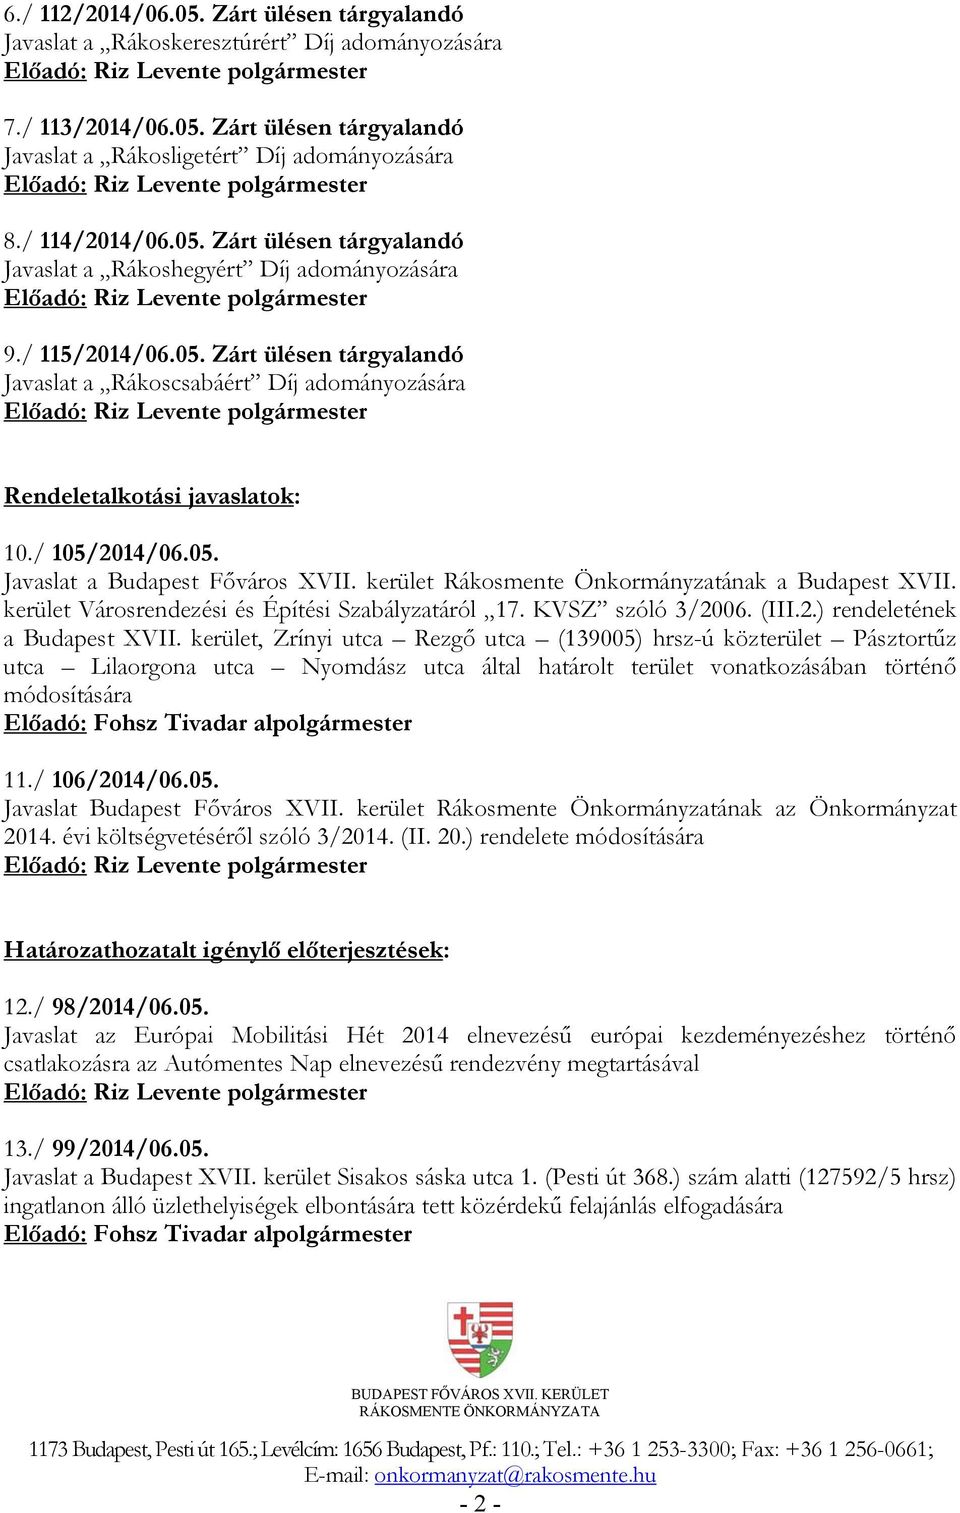 kerület Rákosmente Önkormányzatának a Budapest XVII. kerület Városrendezési és Építési Szabályzatáról 17. KVSZ szóló 3/2006. (III.2.) rendeletének a Budapest XVII.